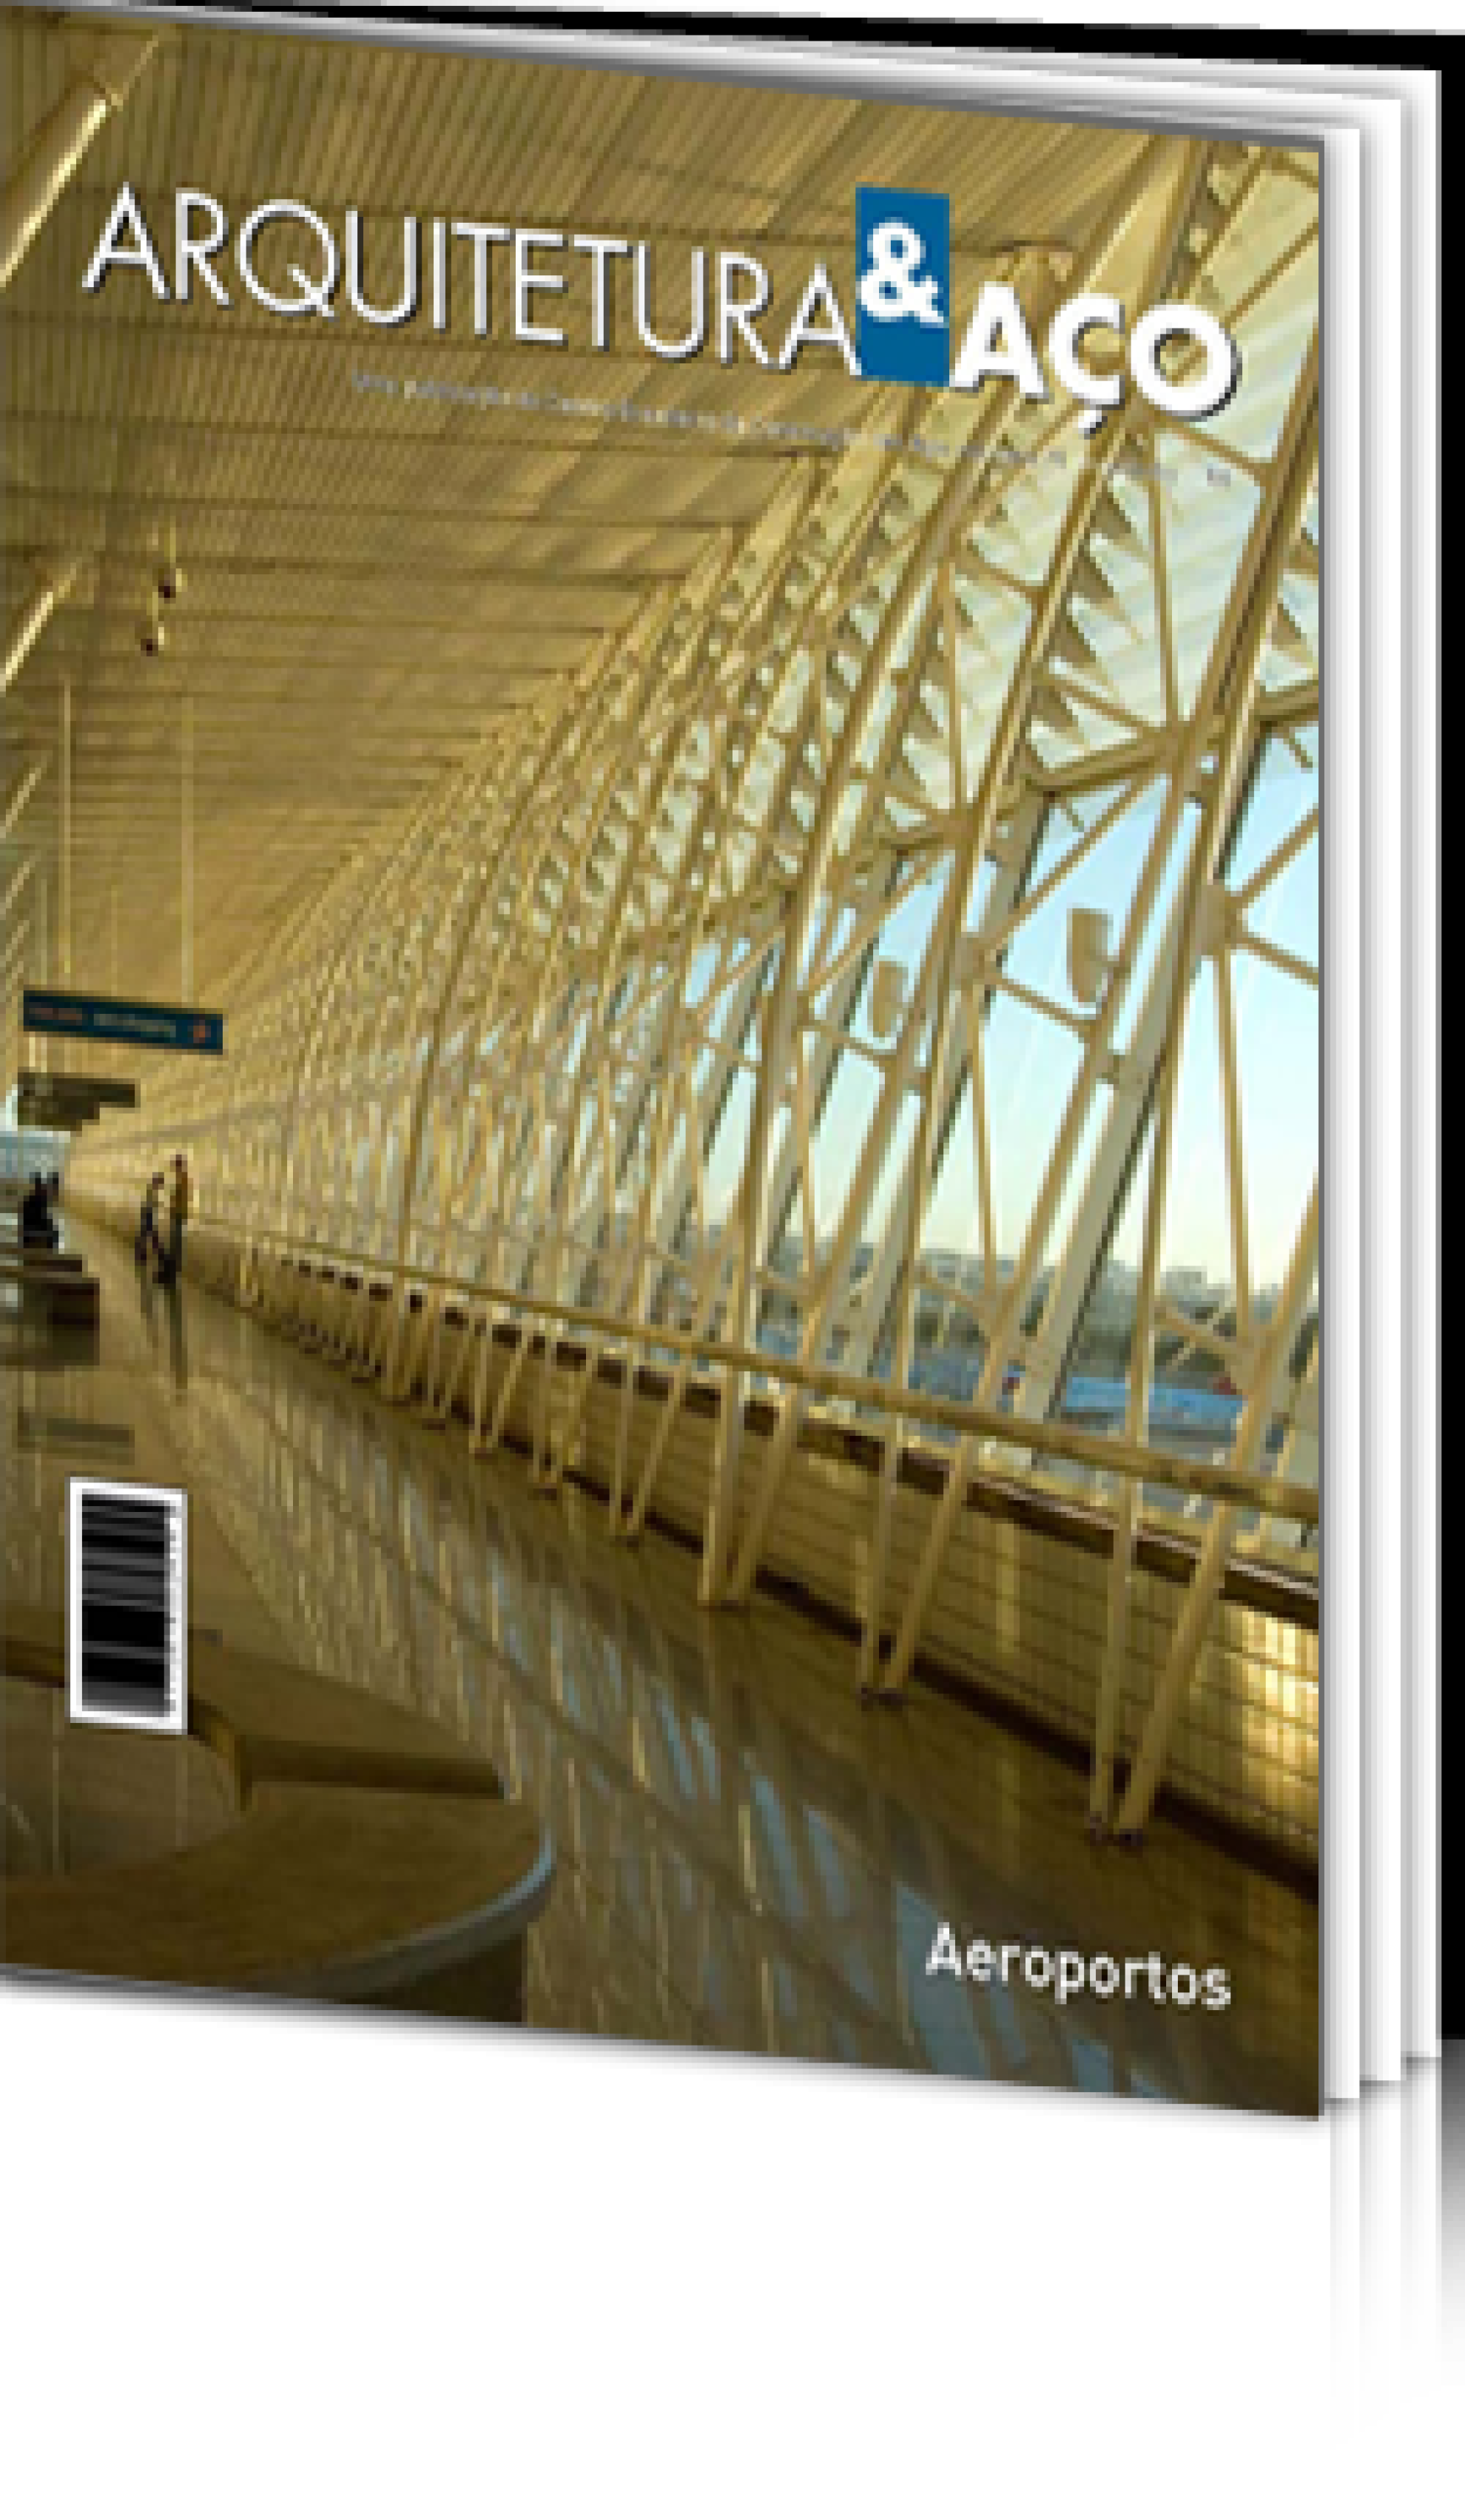 Arquitetura & Aço nº 21 - Aeroportos